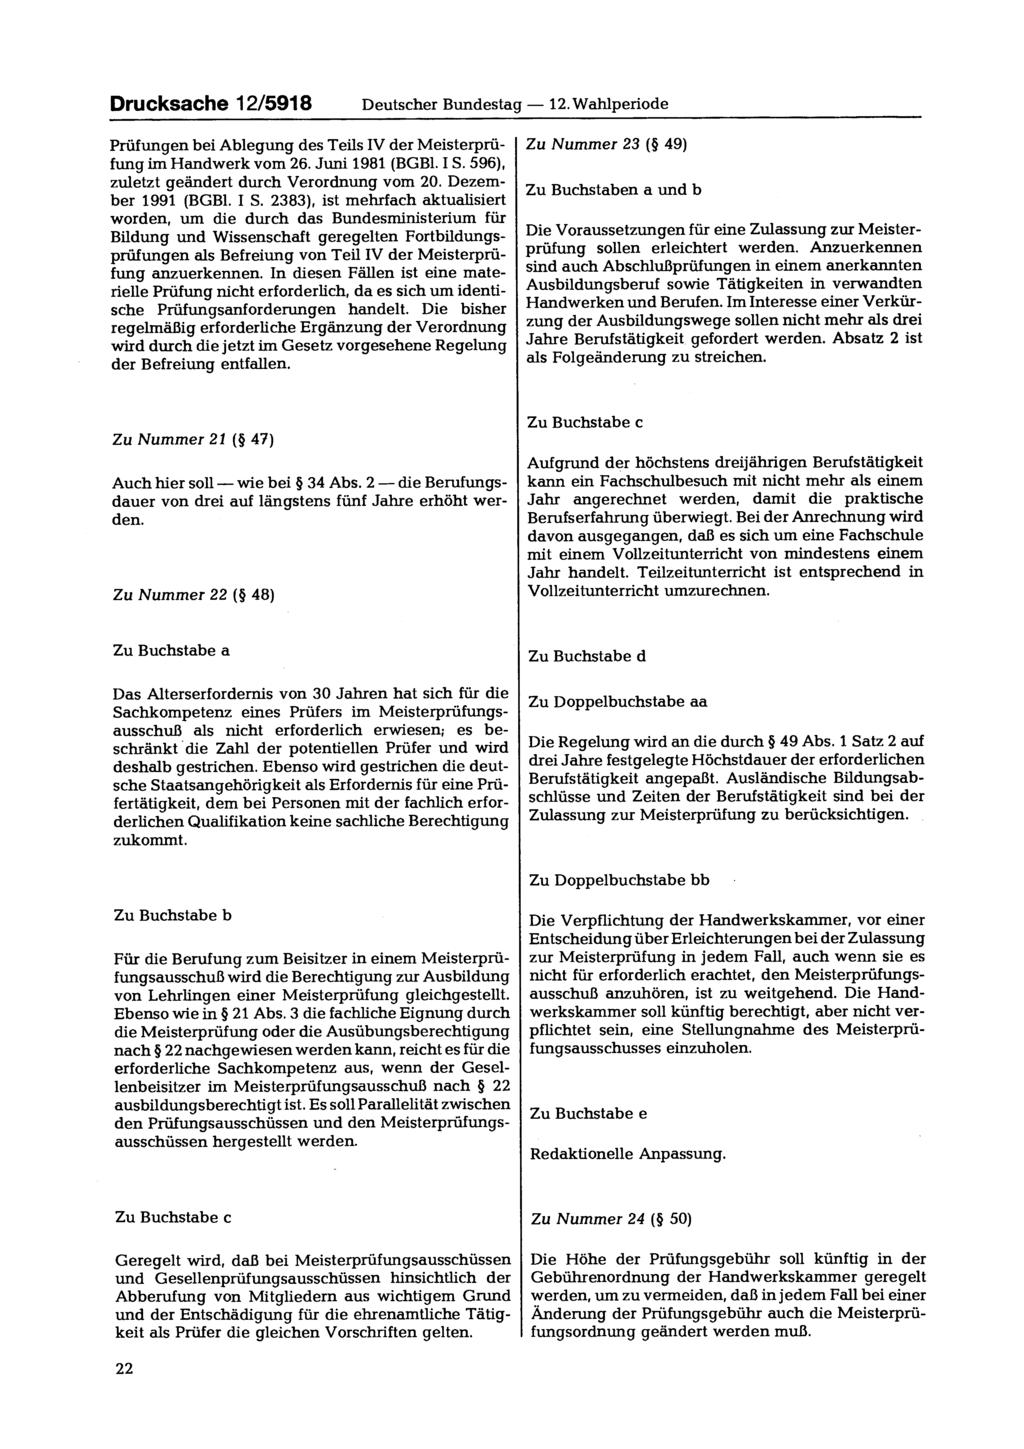 Drucksache 12/5918 Deutscher Bundestag 12. Wahlperiode Prüfungen bei Ablegung des Teils IV der Meisterprüfung im Handwerk vom 26. Juni 1981 (BGBl. I S. 596), zuletzt geändert durch Verordnung vom 20.